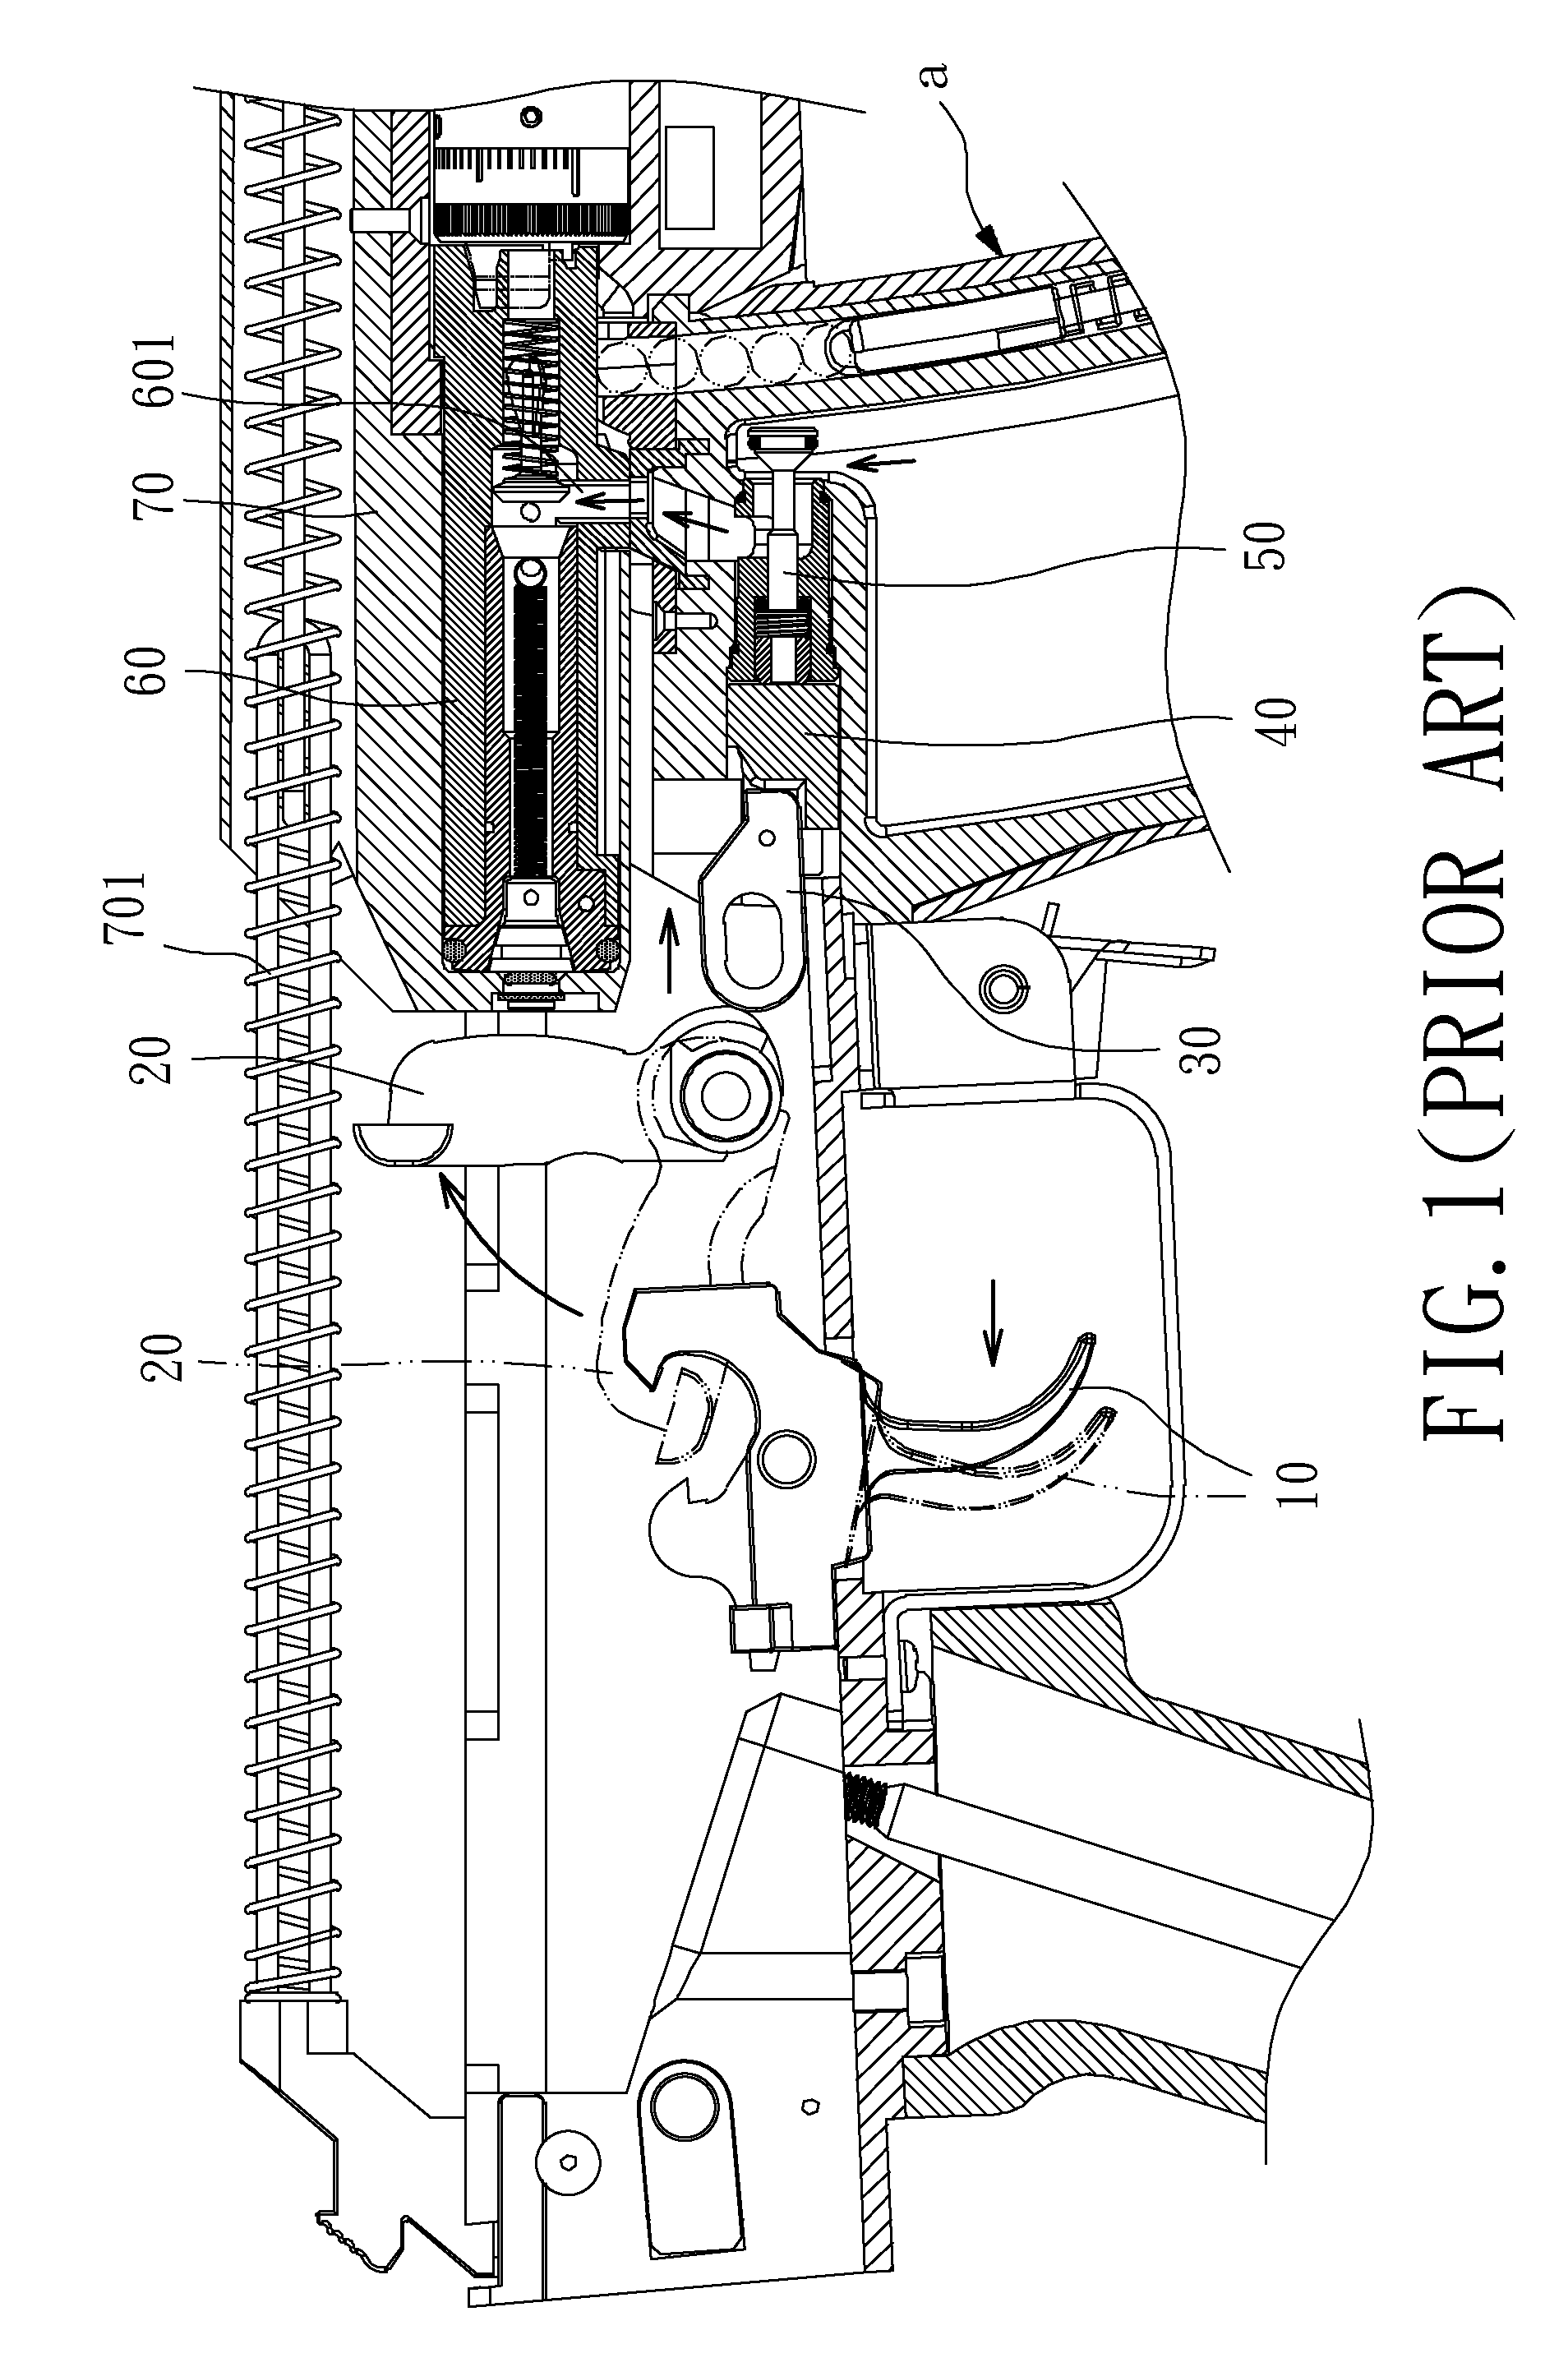 Cartridge box of pneumatic toy gun